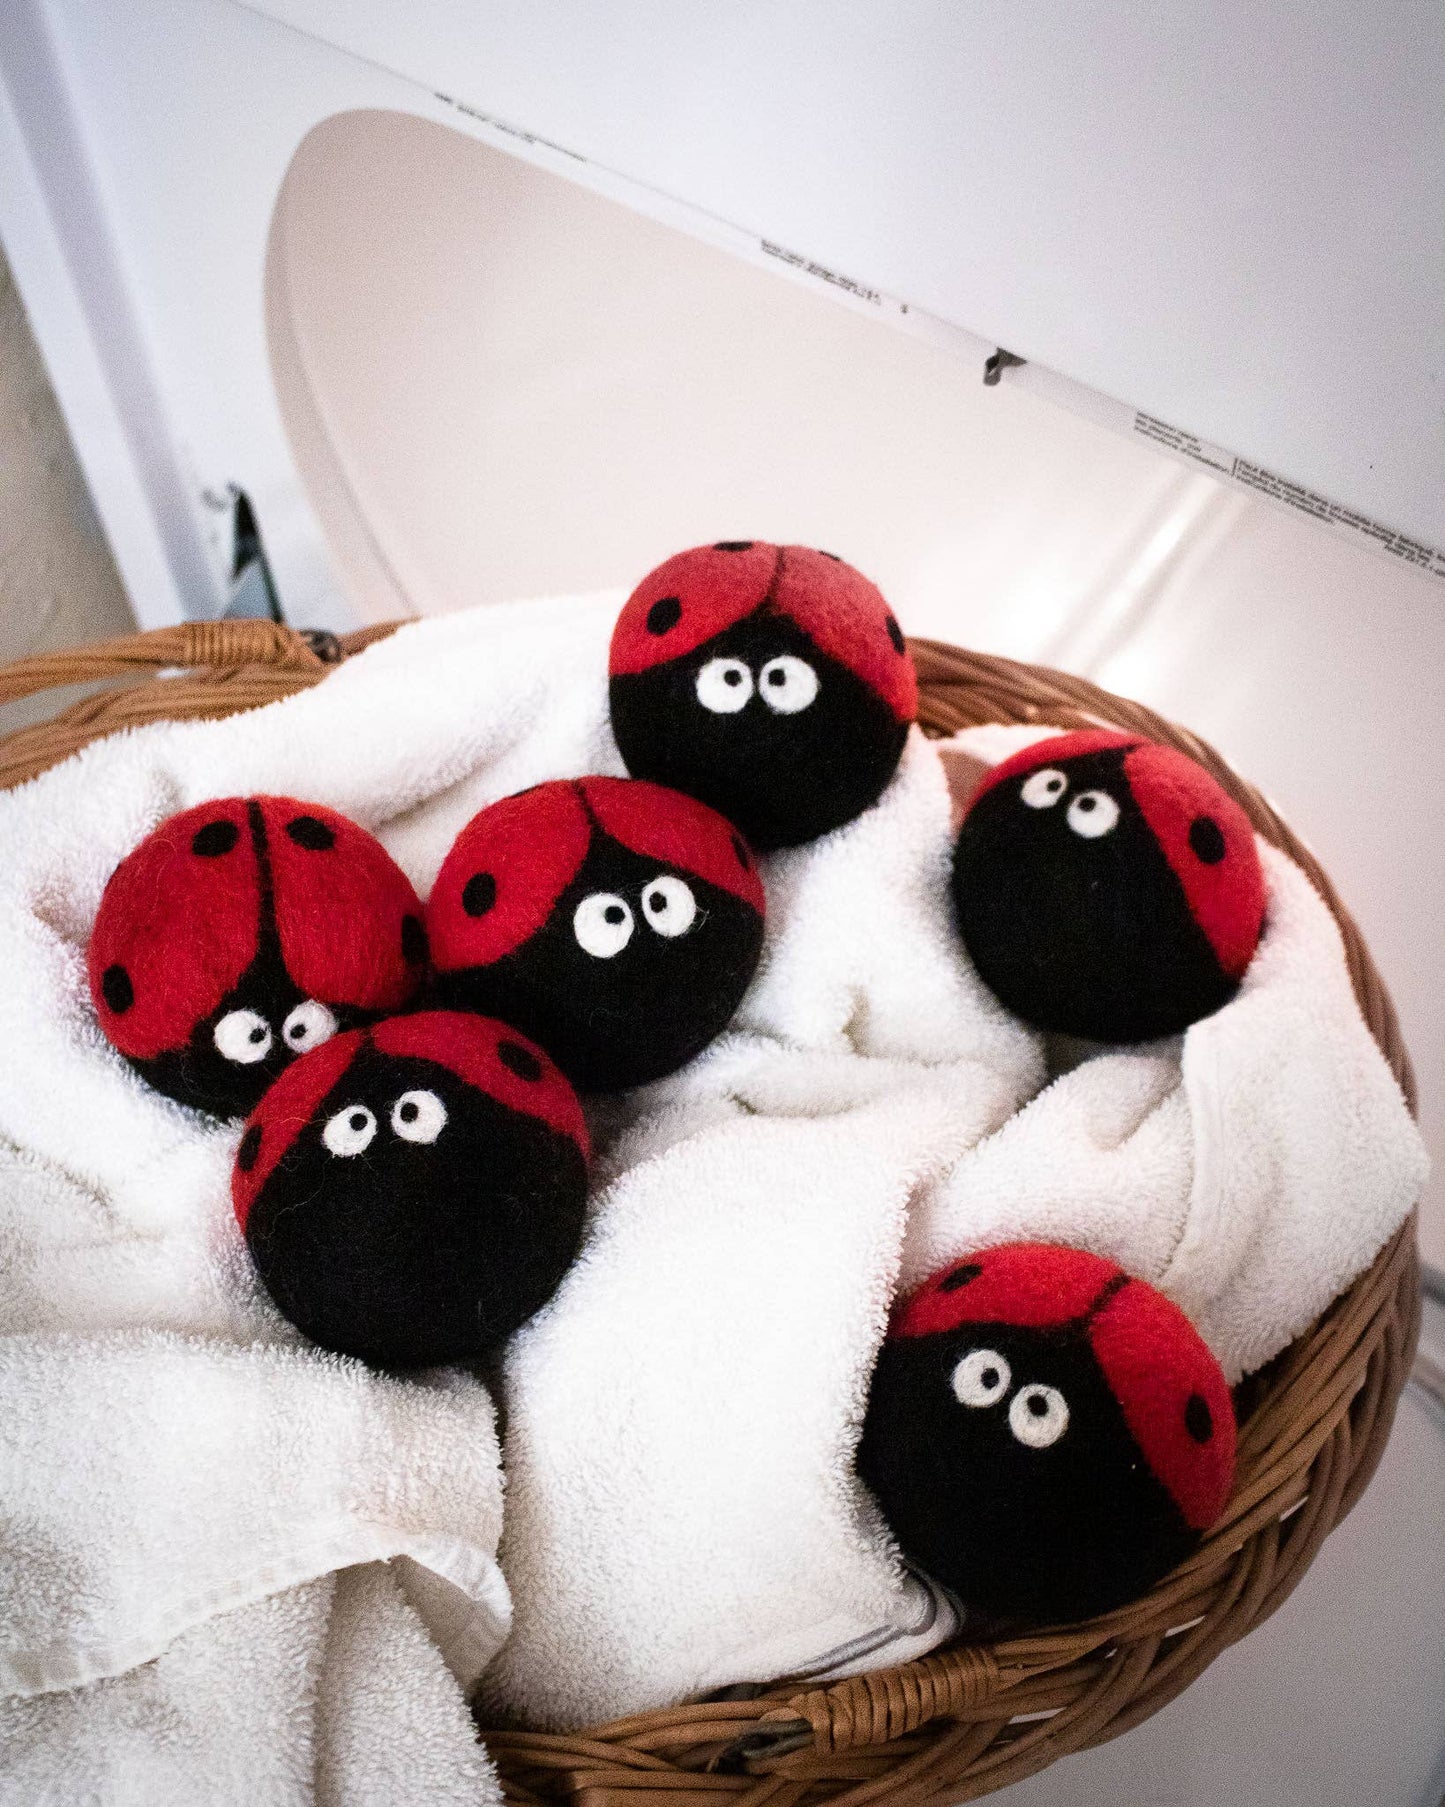 Friendsheep - Laundrybugs Eco Dryer Balls (LADYBUG)